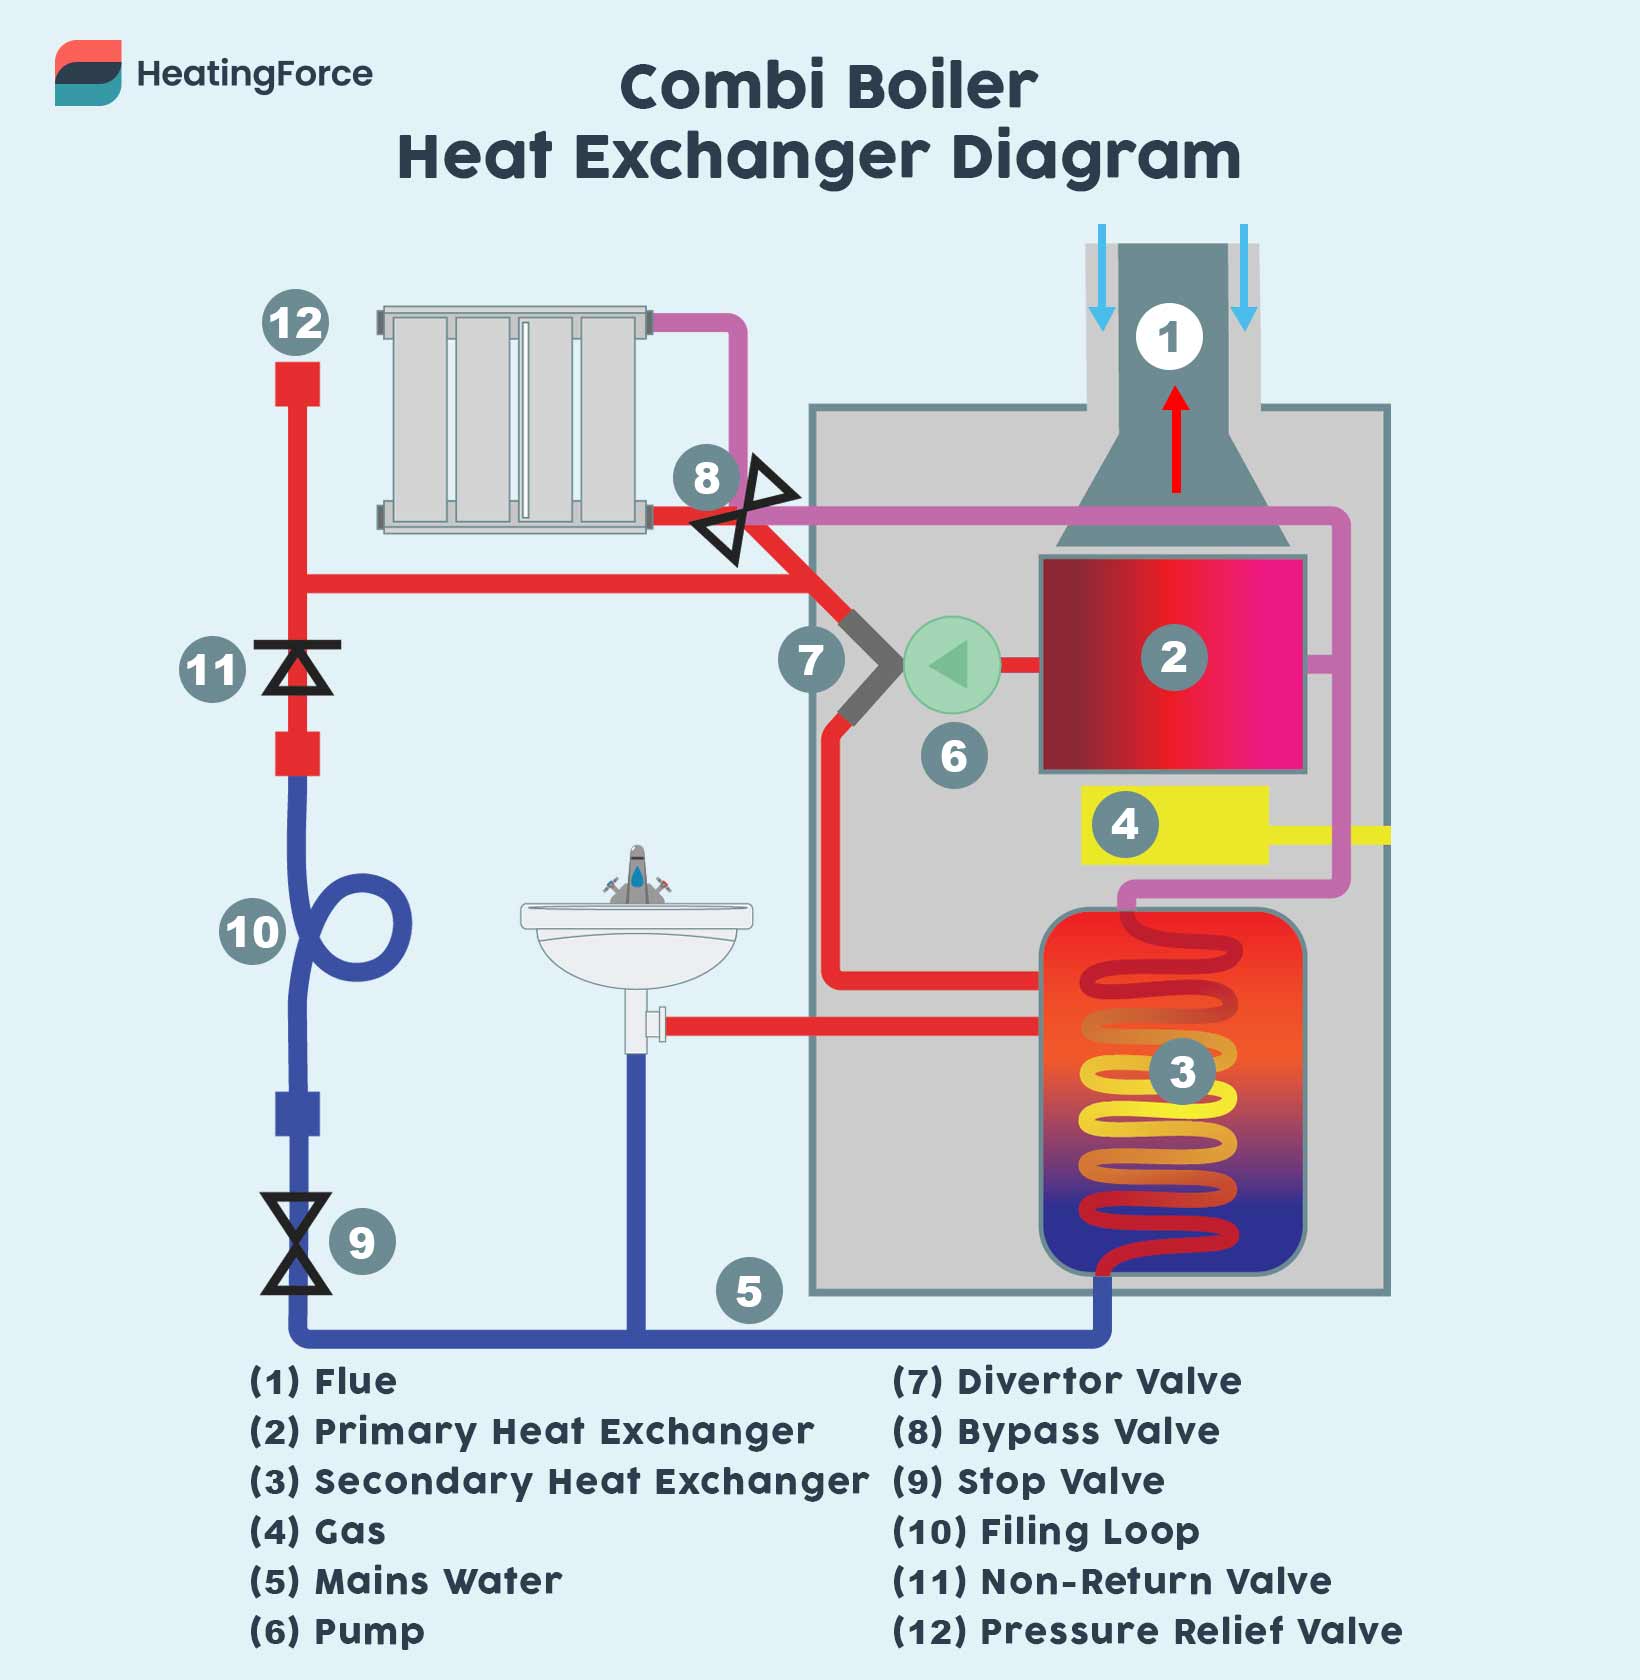 Combi boiler heat exchangers